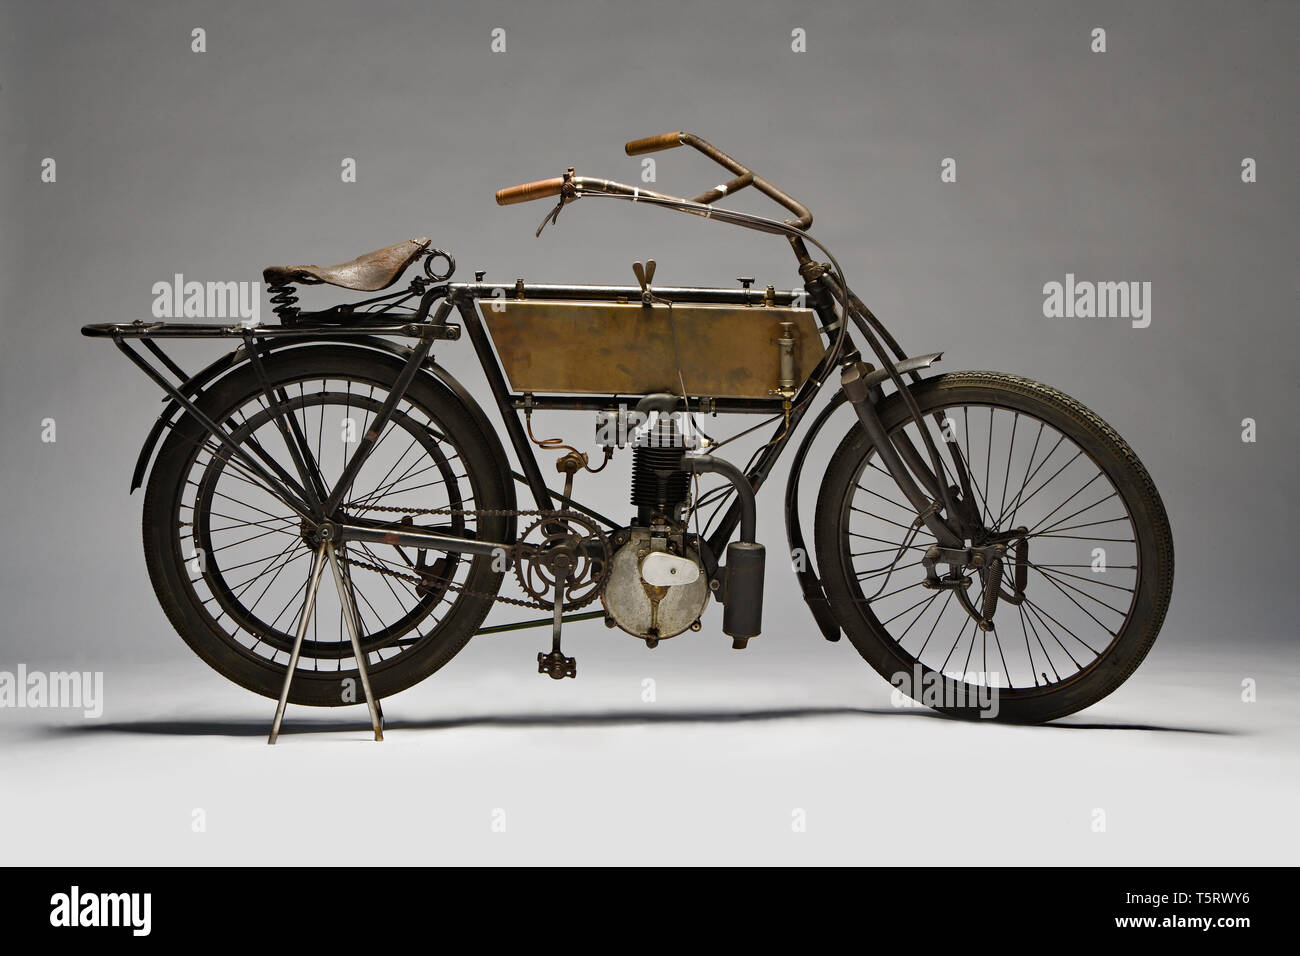 Moto d'epoca Zedel - Frera 3 Hp  Marca: Zedel - Frera modello: 3 Hp nazione: Svizzera - St. Aubin anno: 1903 condizioni: restaurata cili Stock Photo